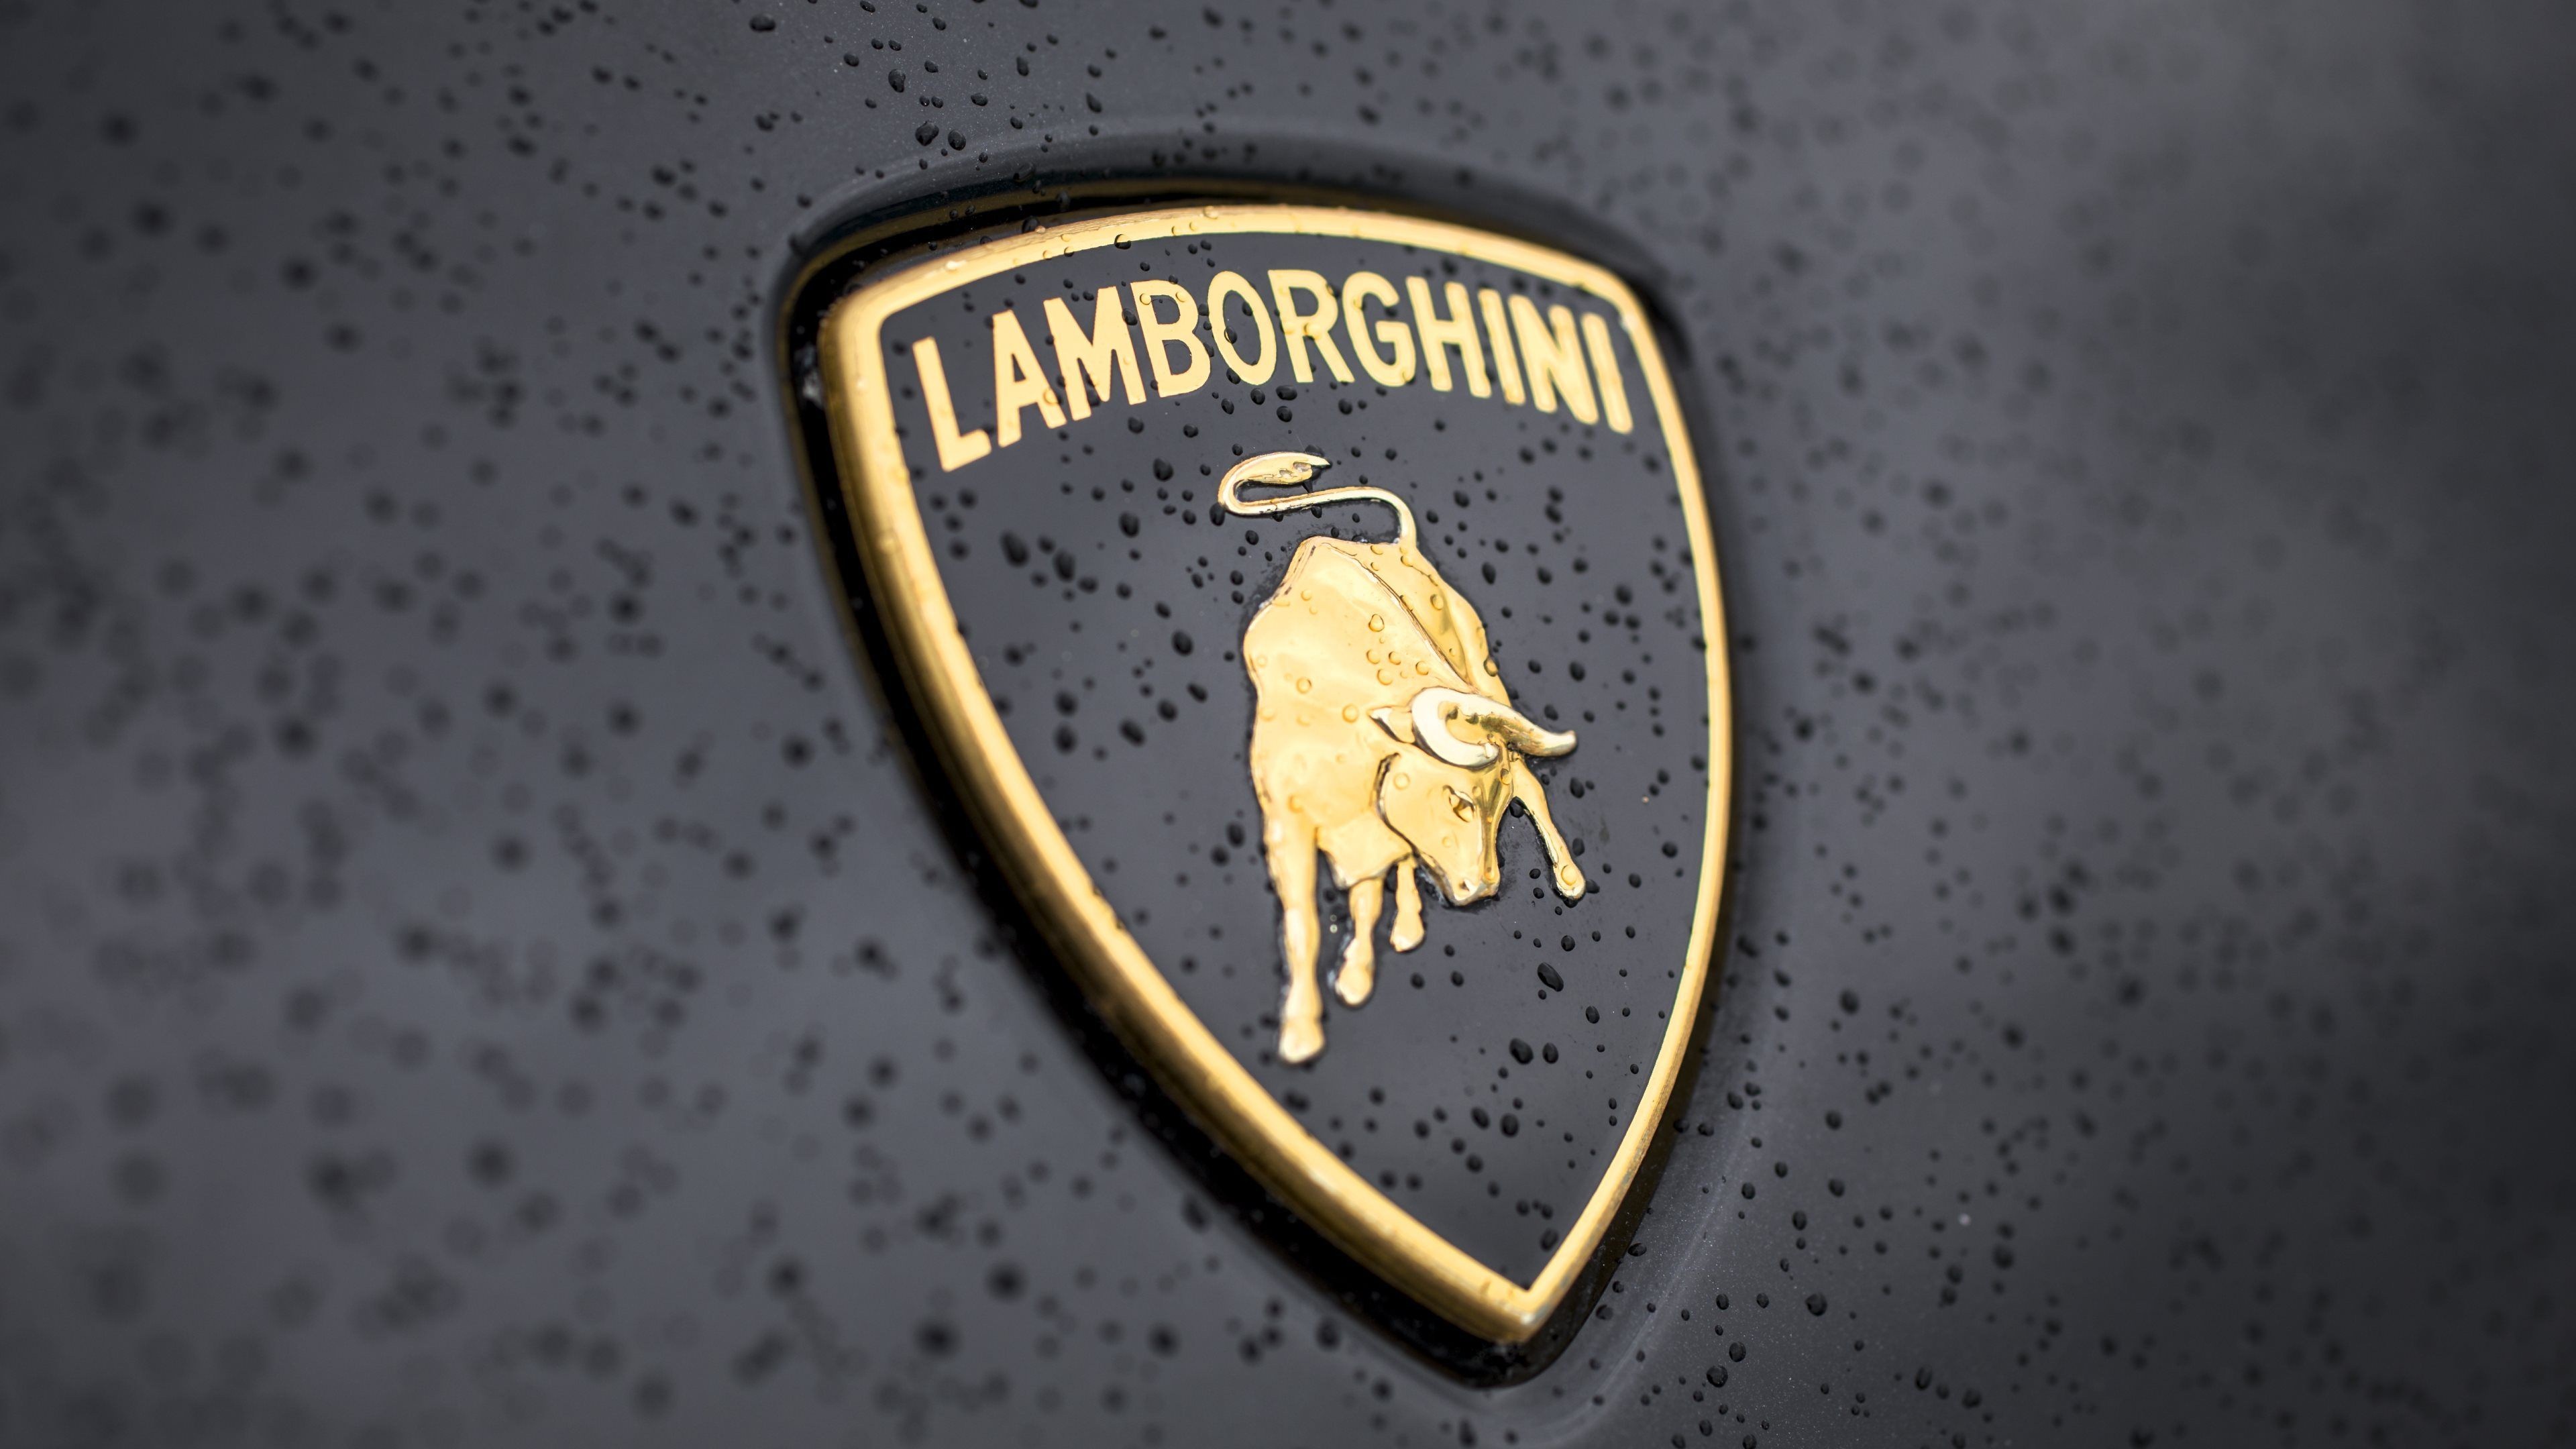 Lamborghini logo car 1080P 2K 4K 5K HD wallpapers free download   Wallpaper Flare